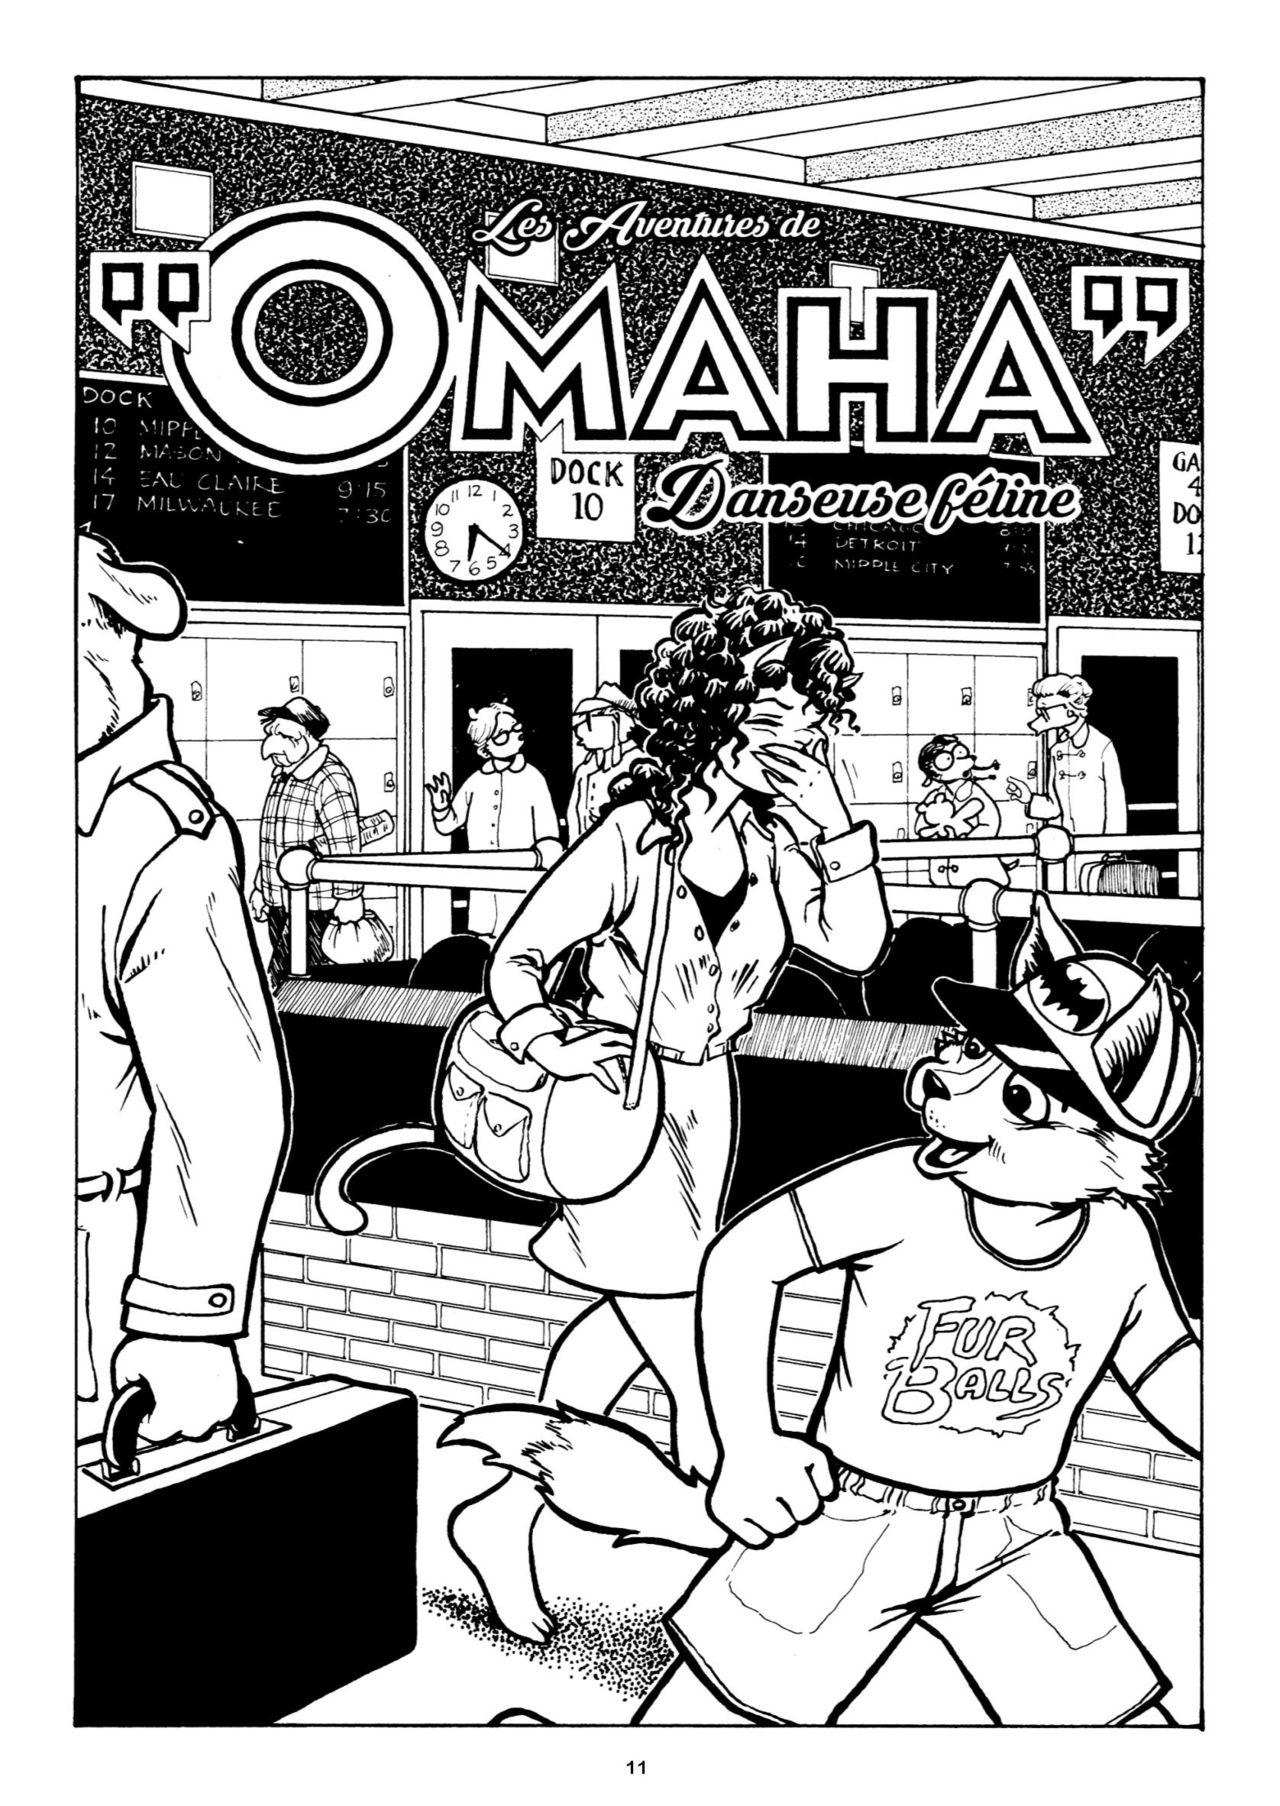 Les aventures complètes de «Omaha» danseuse féline 03 numero d'image 12